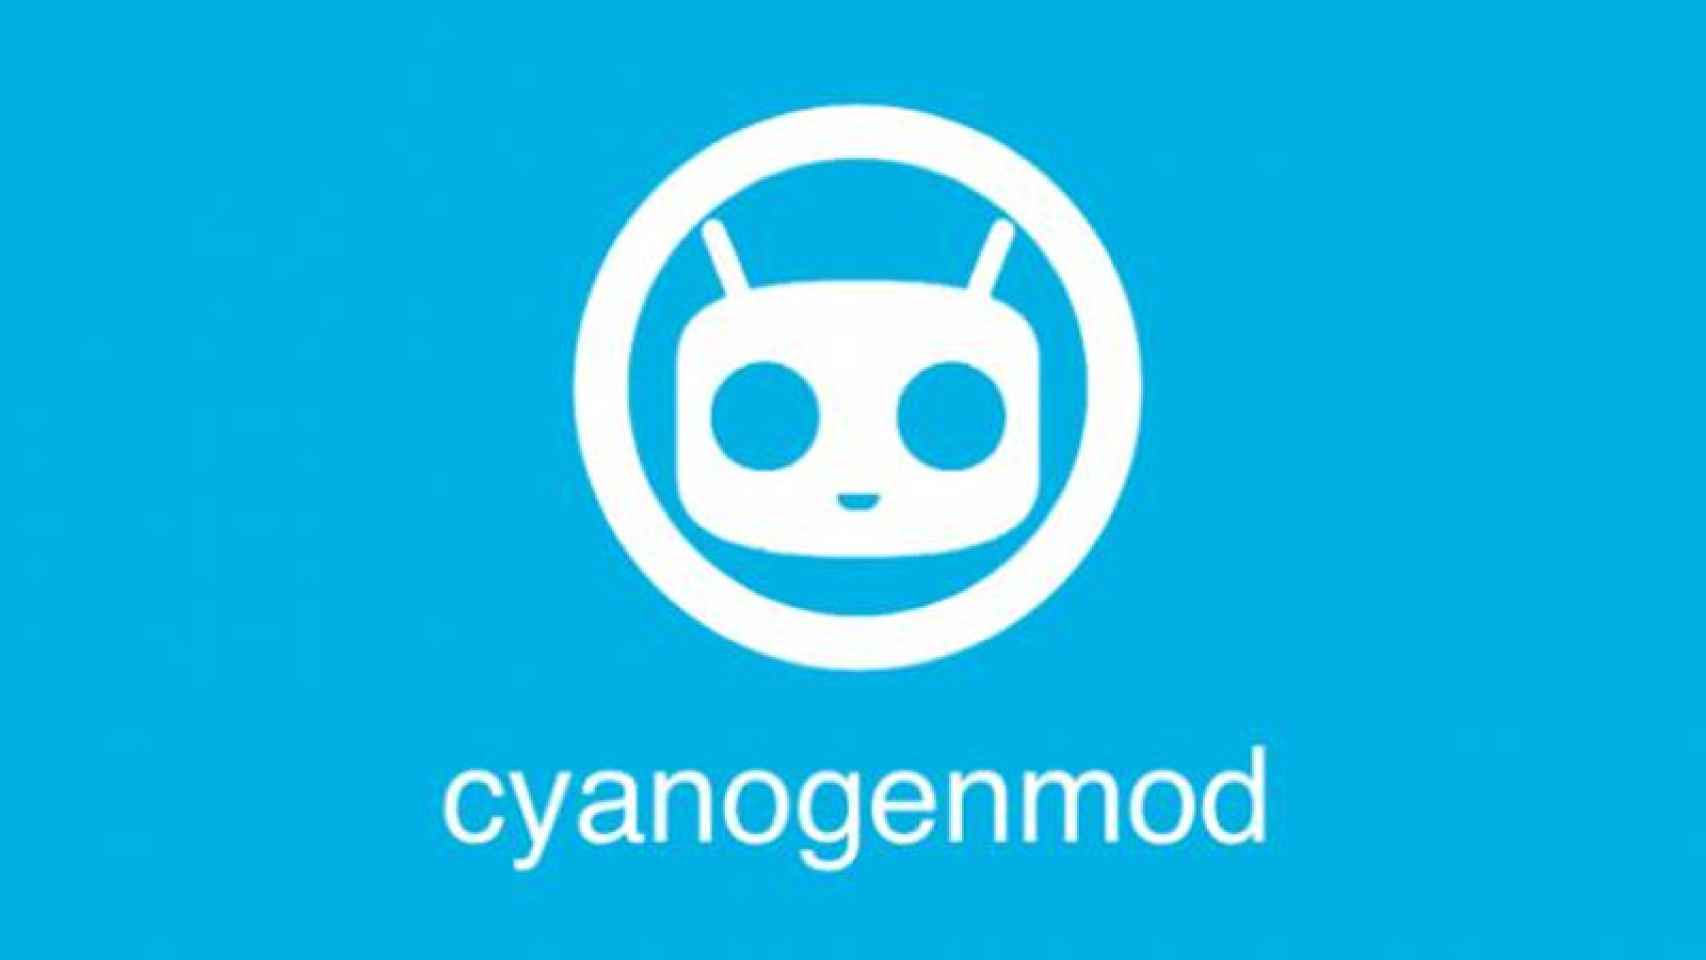 CyanogenMOD trae Android 7.1 al Motorola Moto G 2015 y más móviles